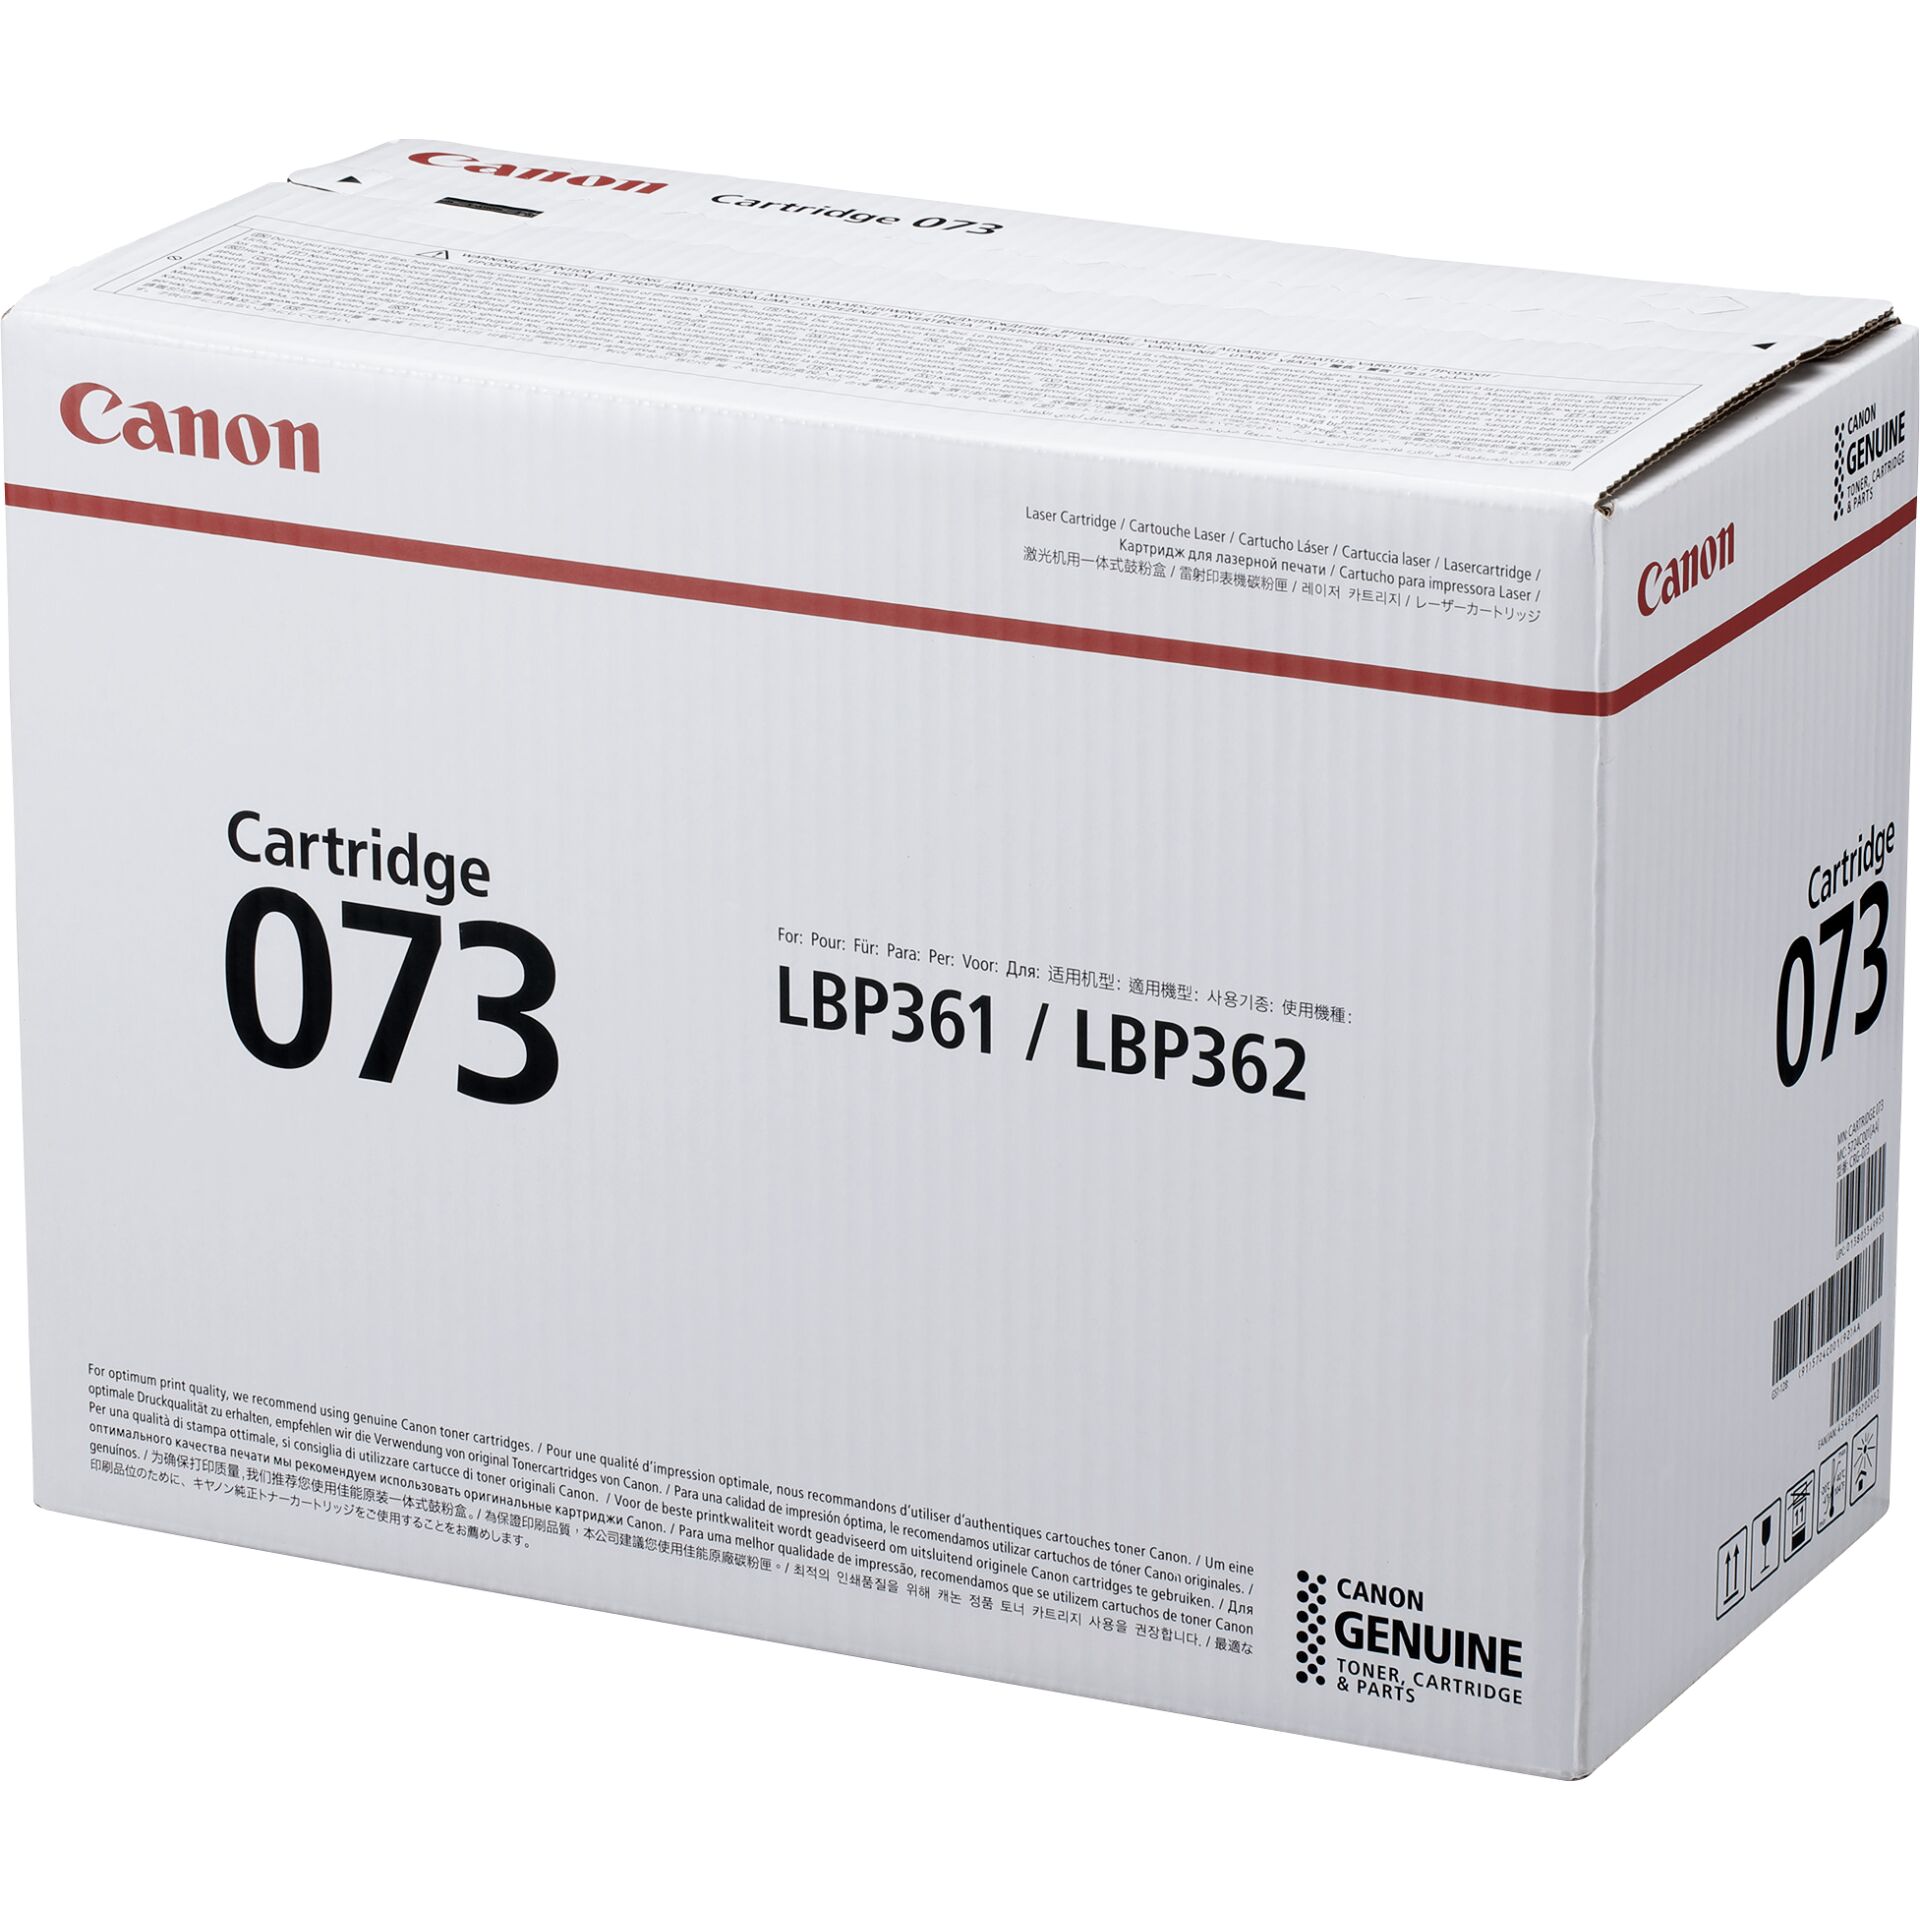 Canon Toner Cartridge 073 schwarz